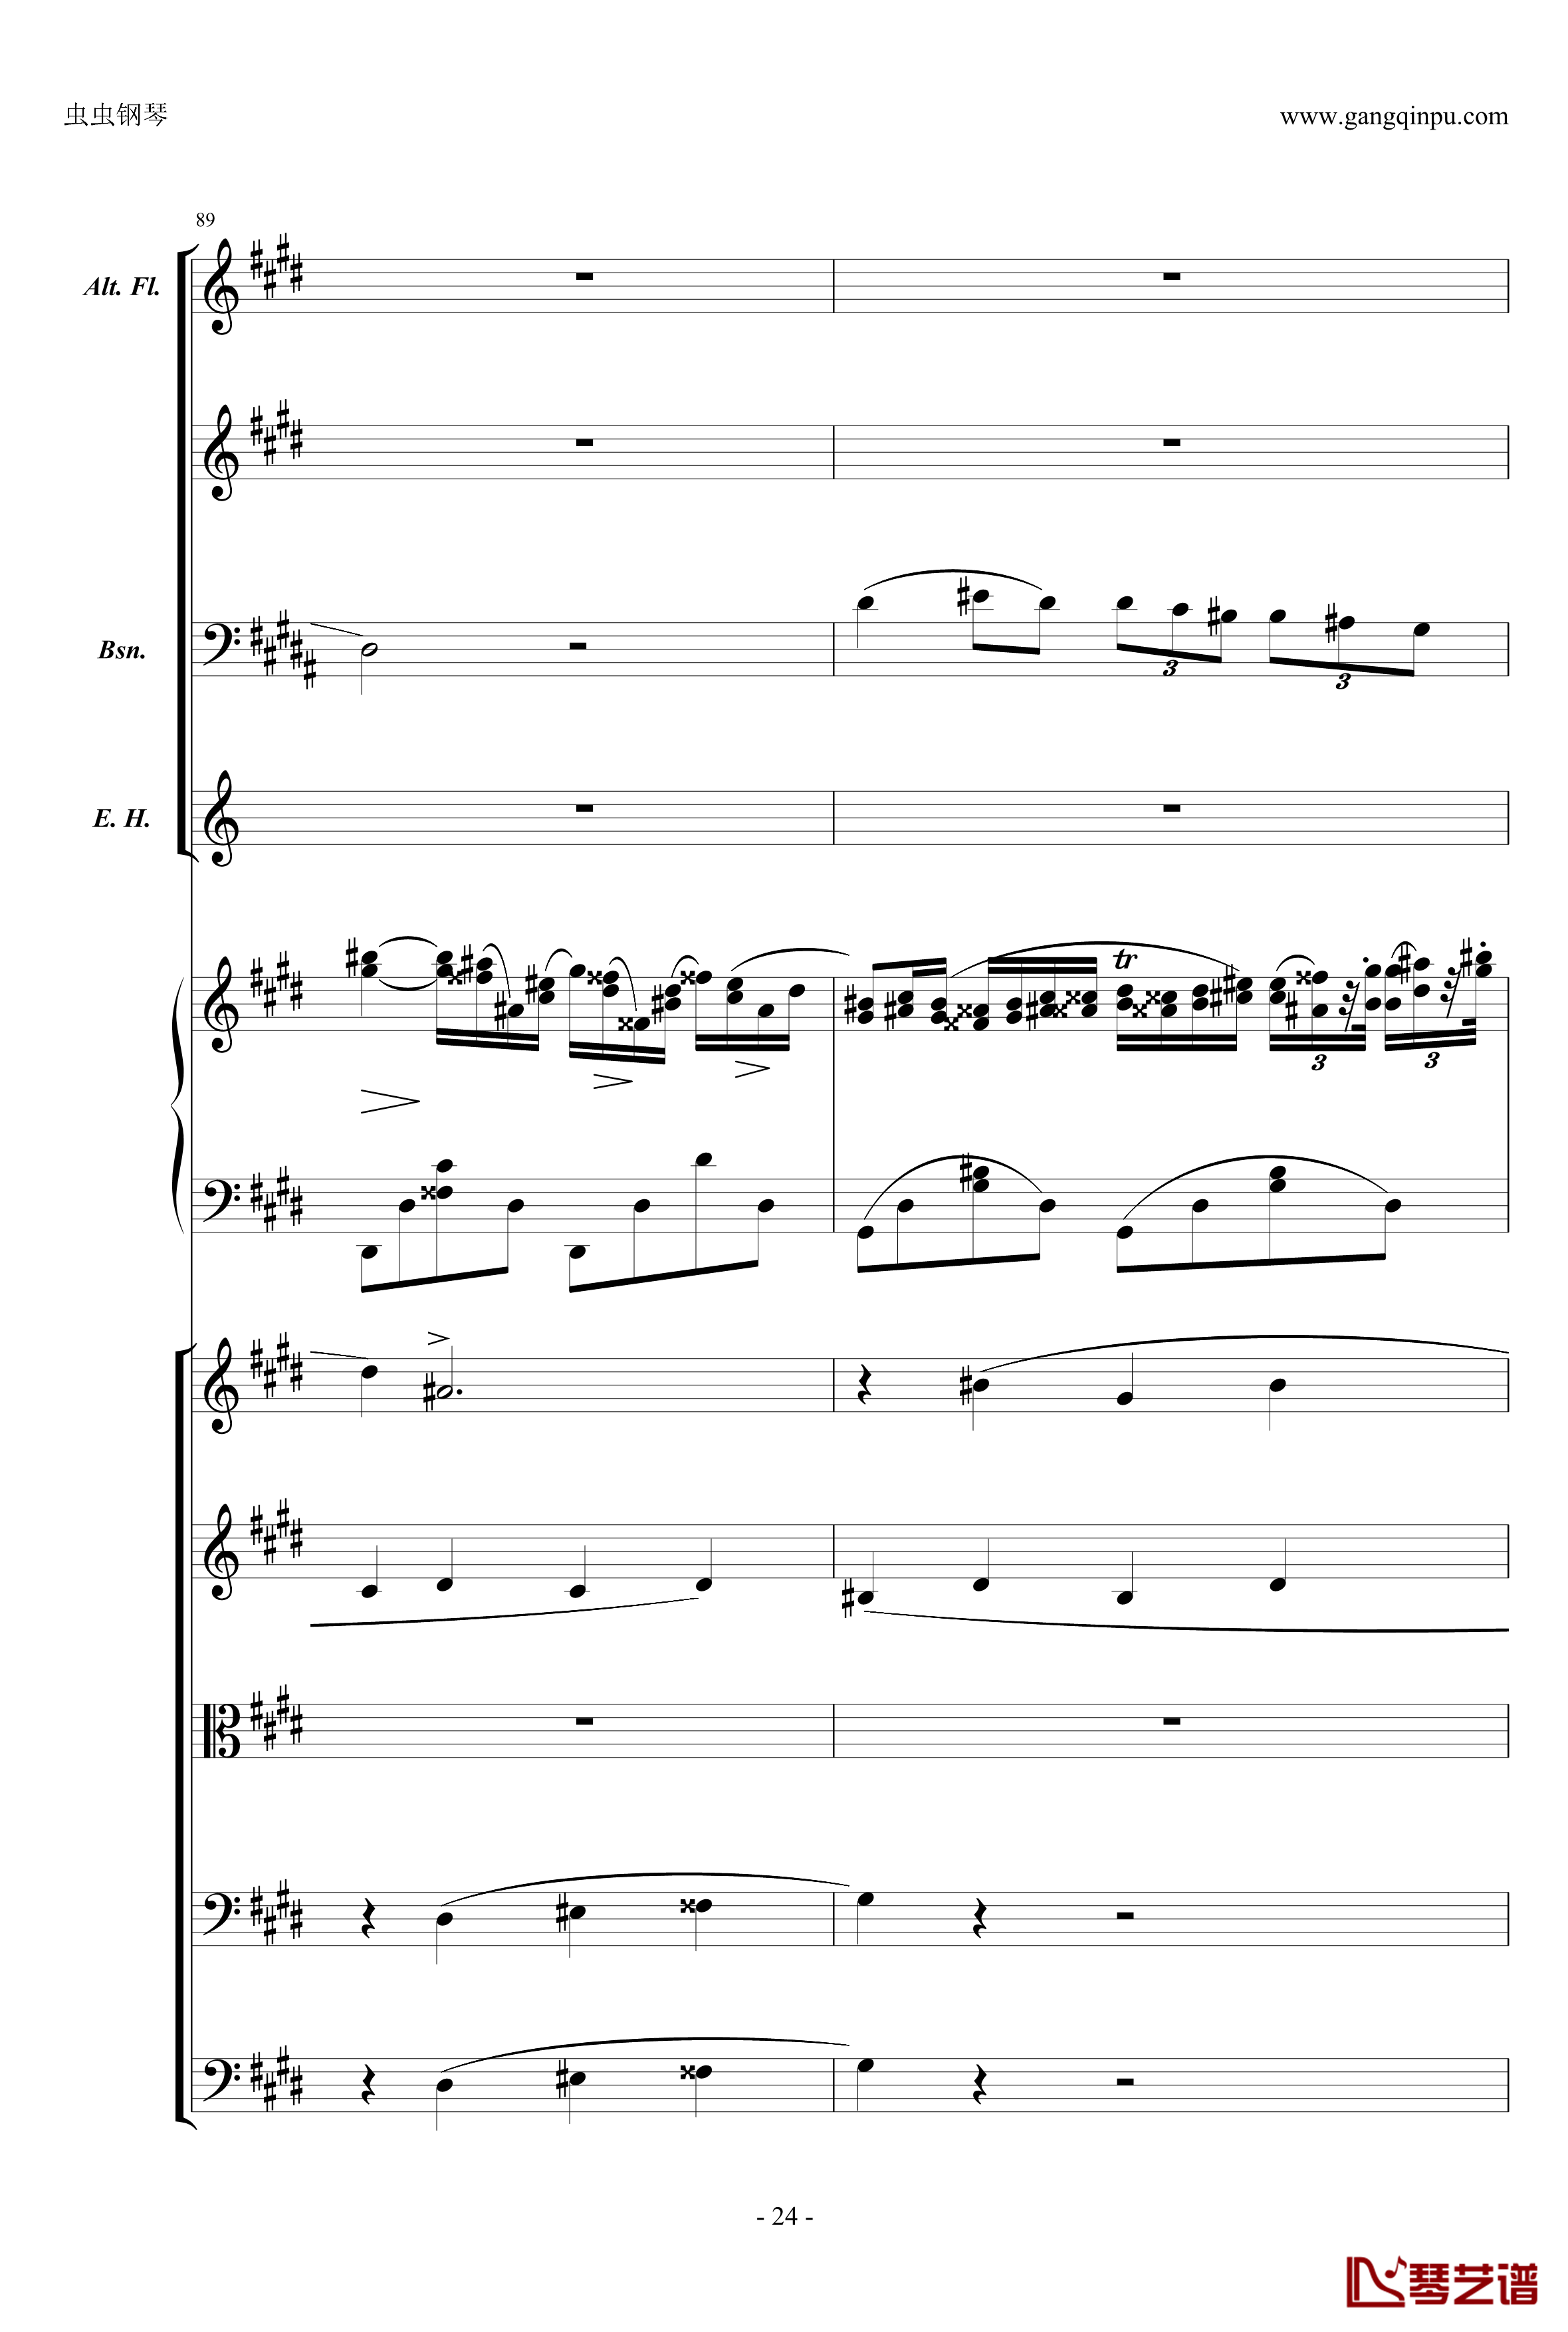 萧邦第一钢琴协奏曲第二乐章钢琴谱-肖邦-chopin24